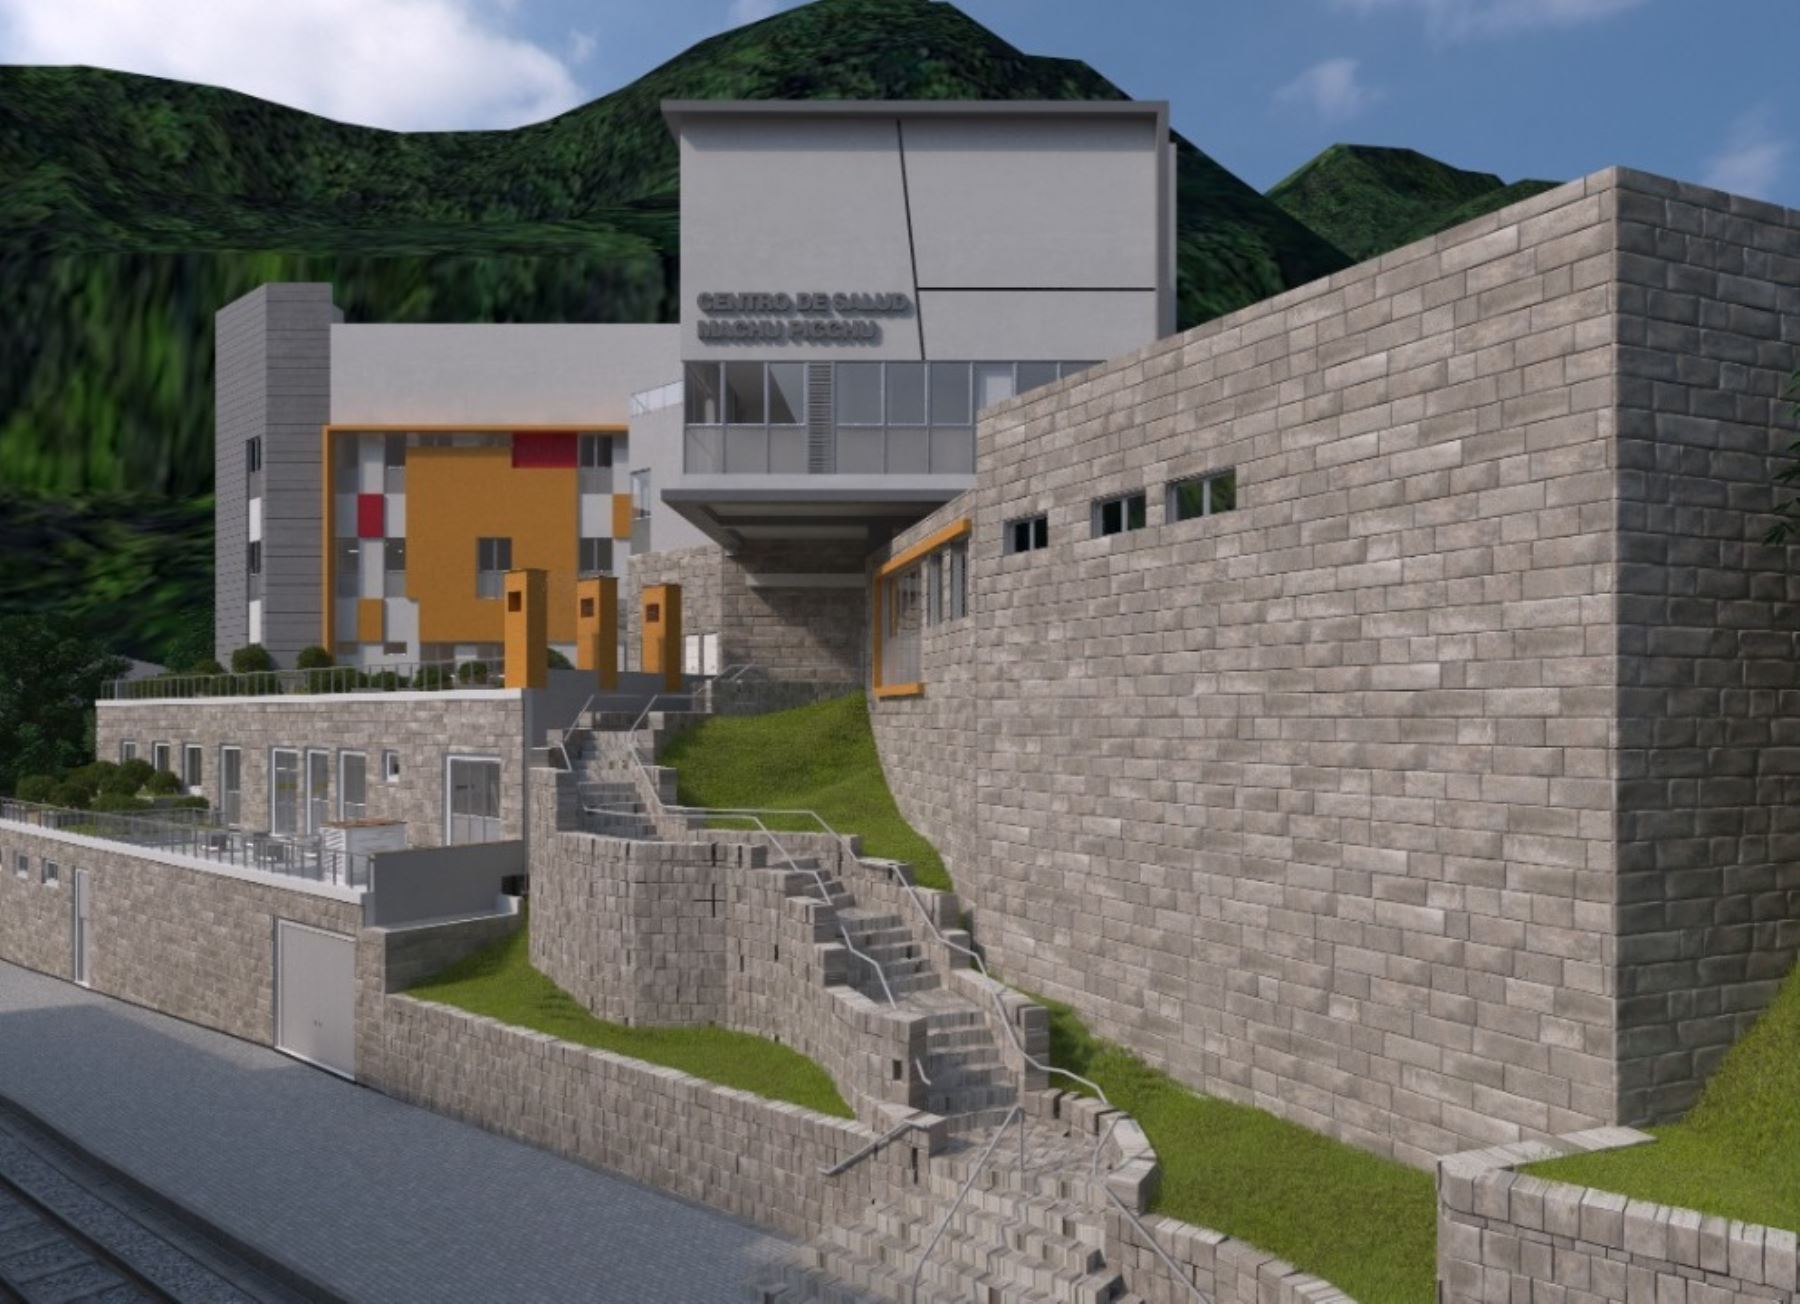 Así lucirá el futuro centro de salud del distrito de Machu Picchu Pueblo, que beneficiará a los pobladores locales y a los turistas que visitan la zona. Foto: ANDINA/difusión.